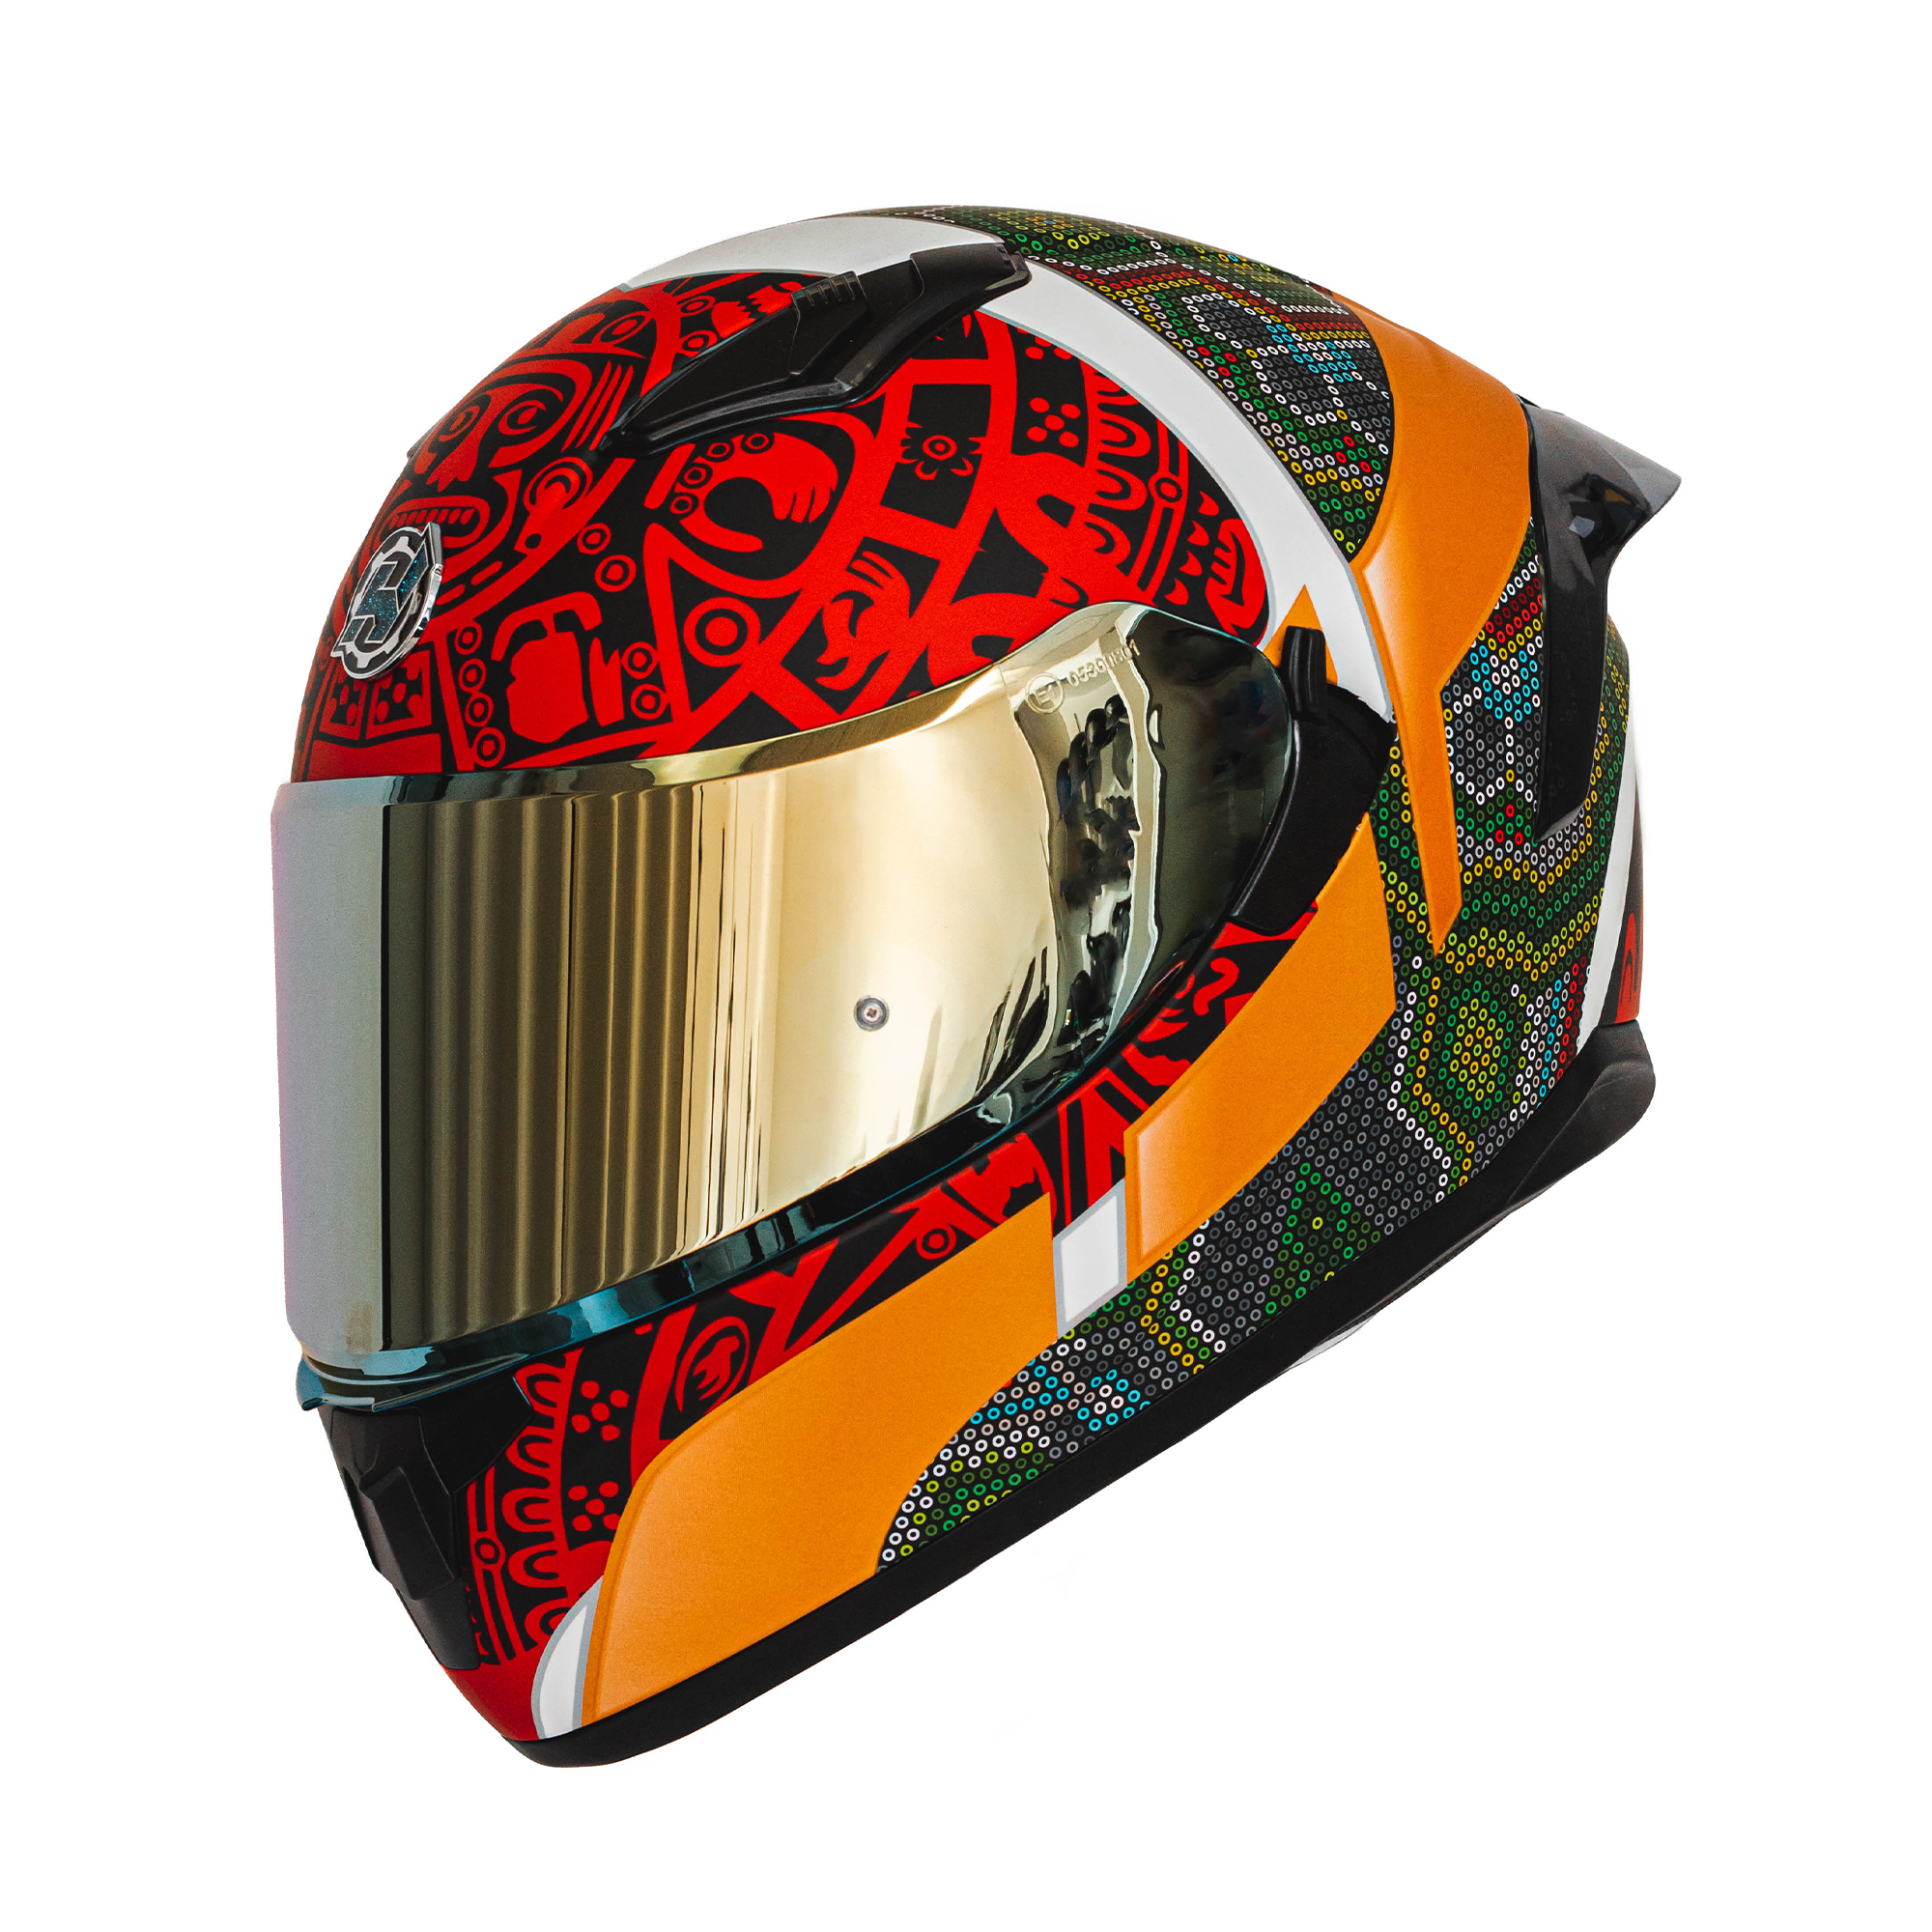 Obsidian Street Bike Helmets